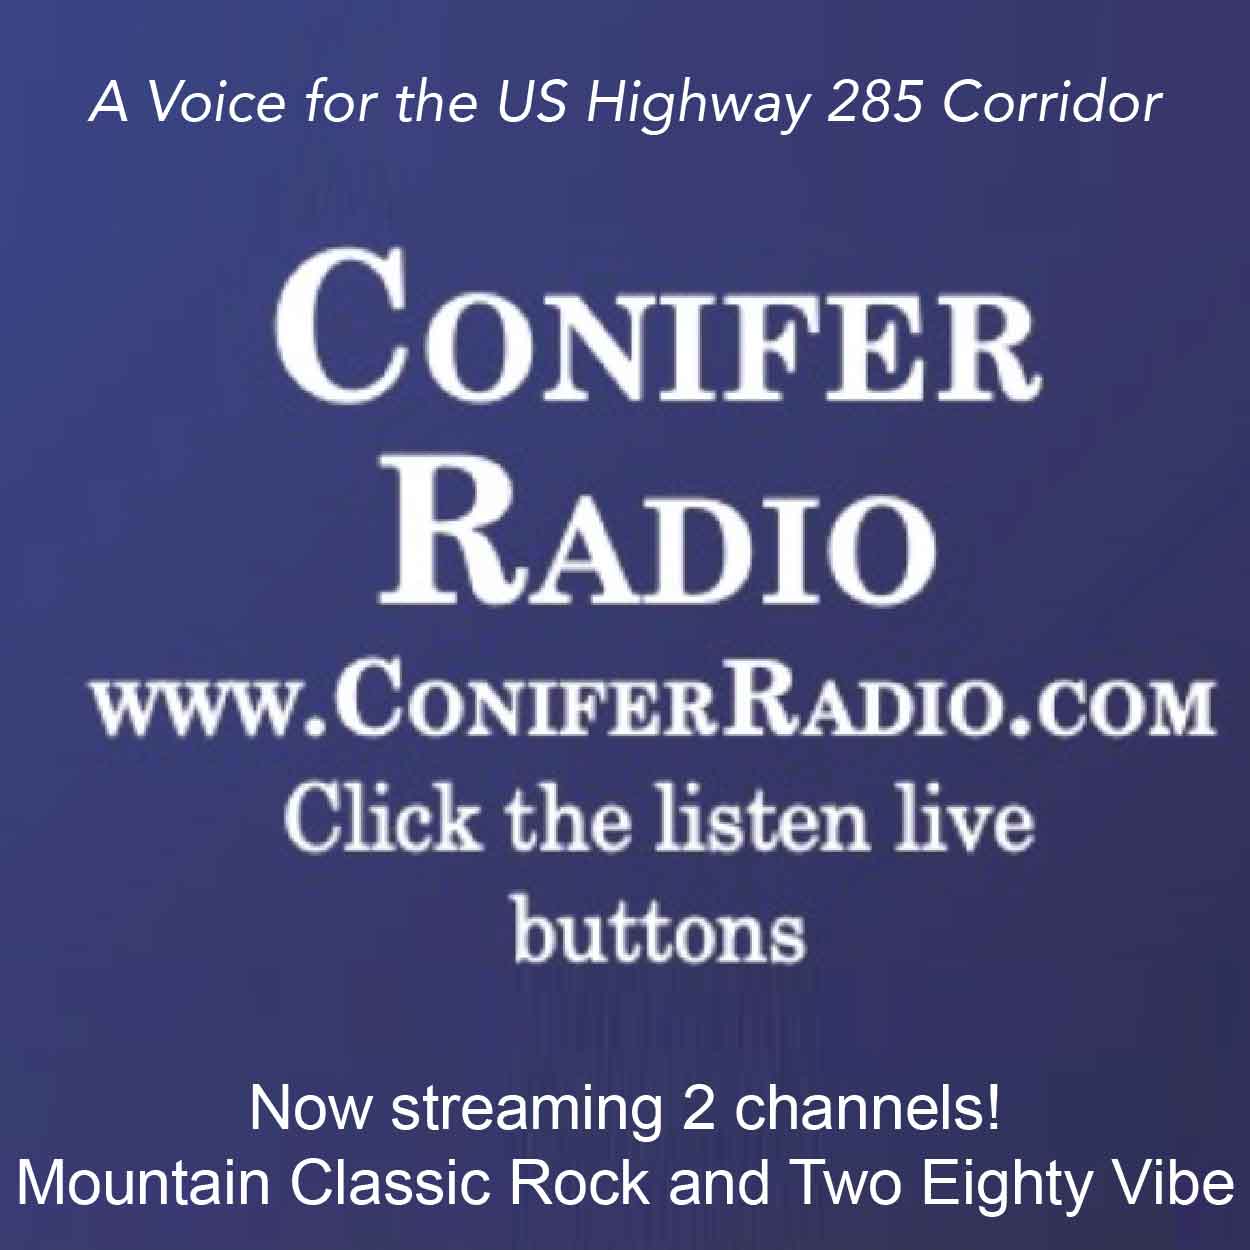 Conifer Radio